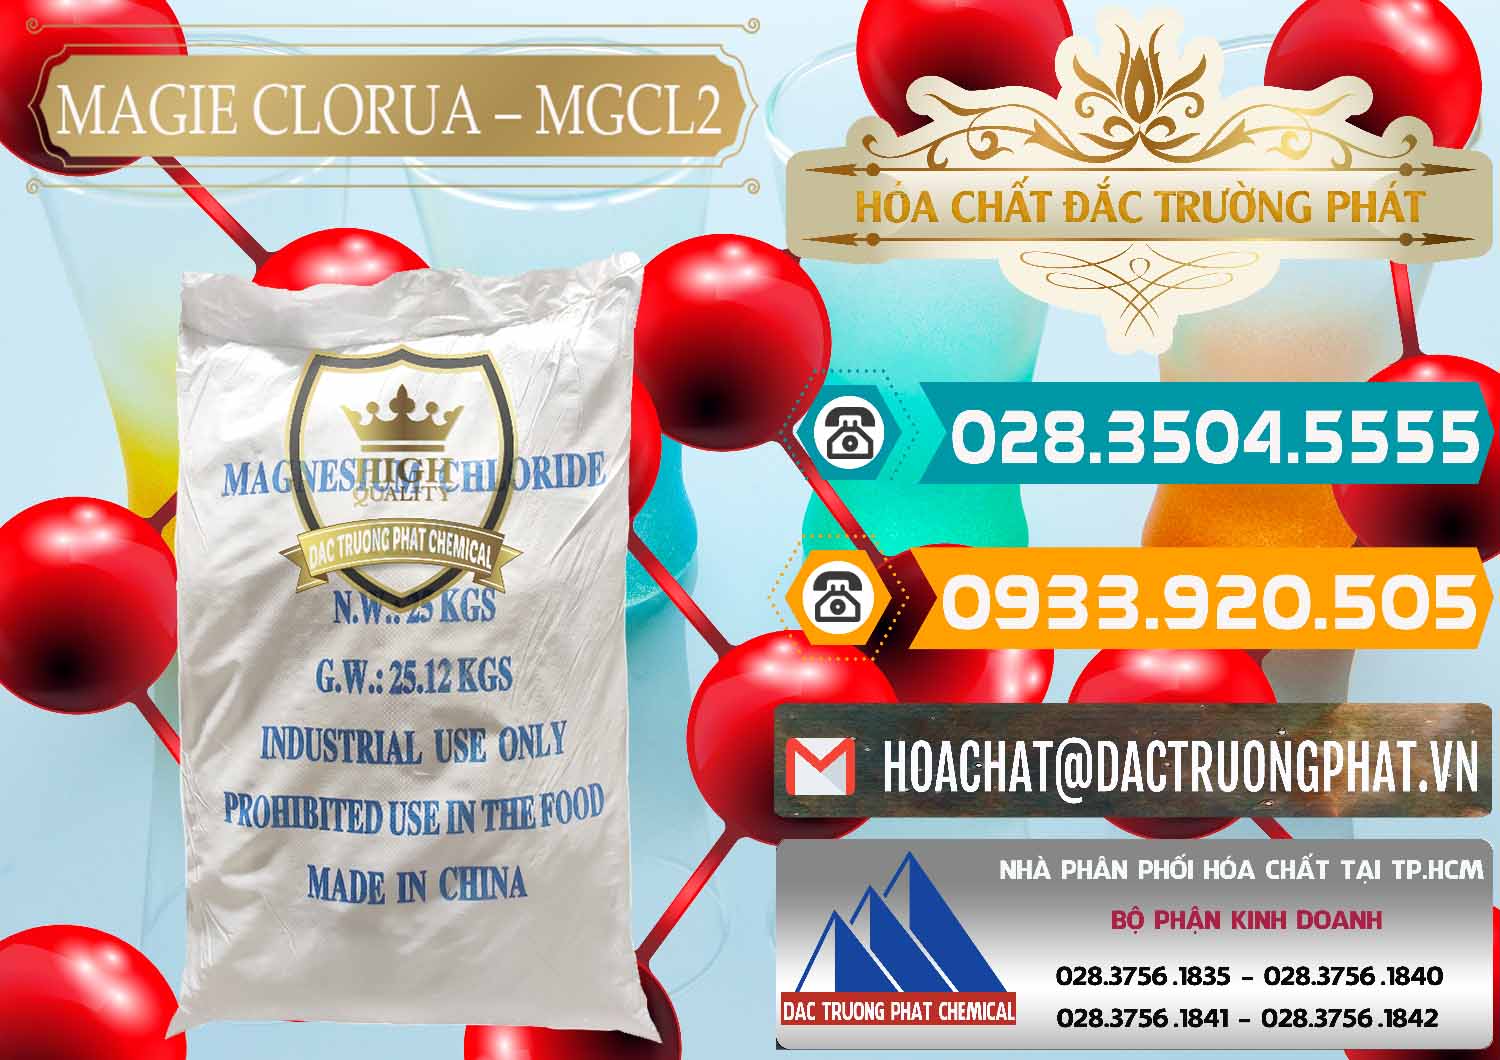 Đơn vị chuyên bán _ phân phối Magie Clorua – MGCL2 96% Dạng Vảy Trung Quốc China - 0091 - Công ty phân phối và cung cấp hóa chất tại TP.HCM - congtyhoachat.vn